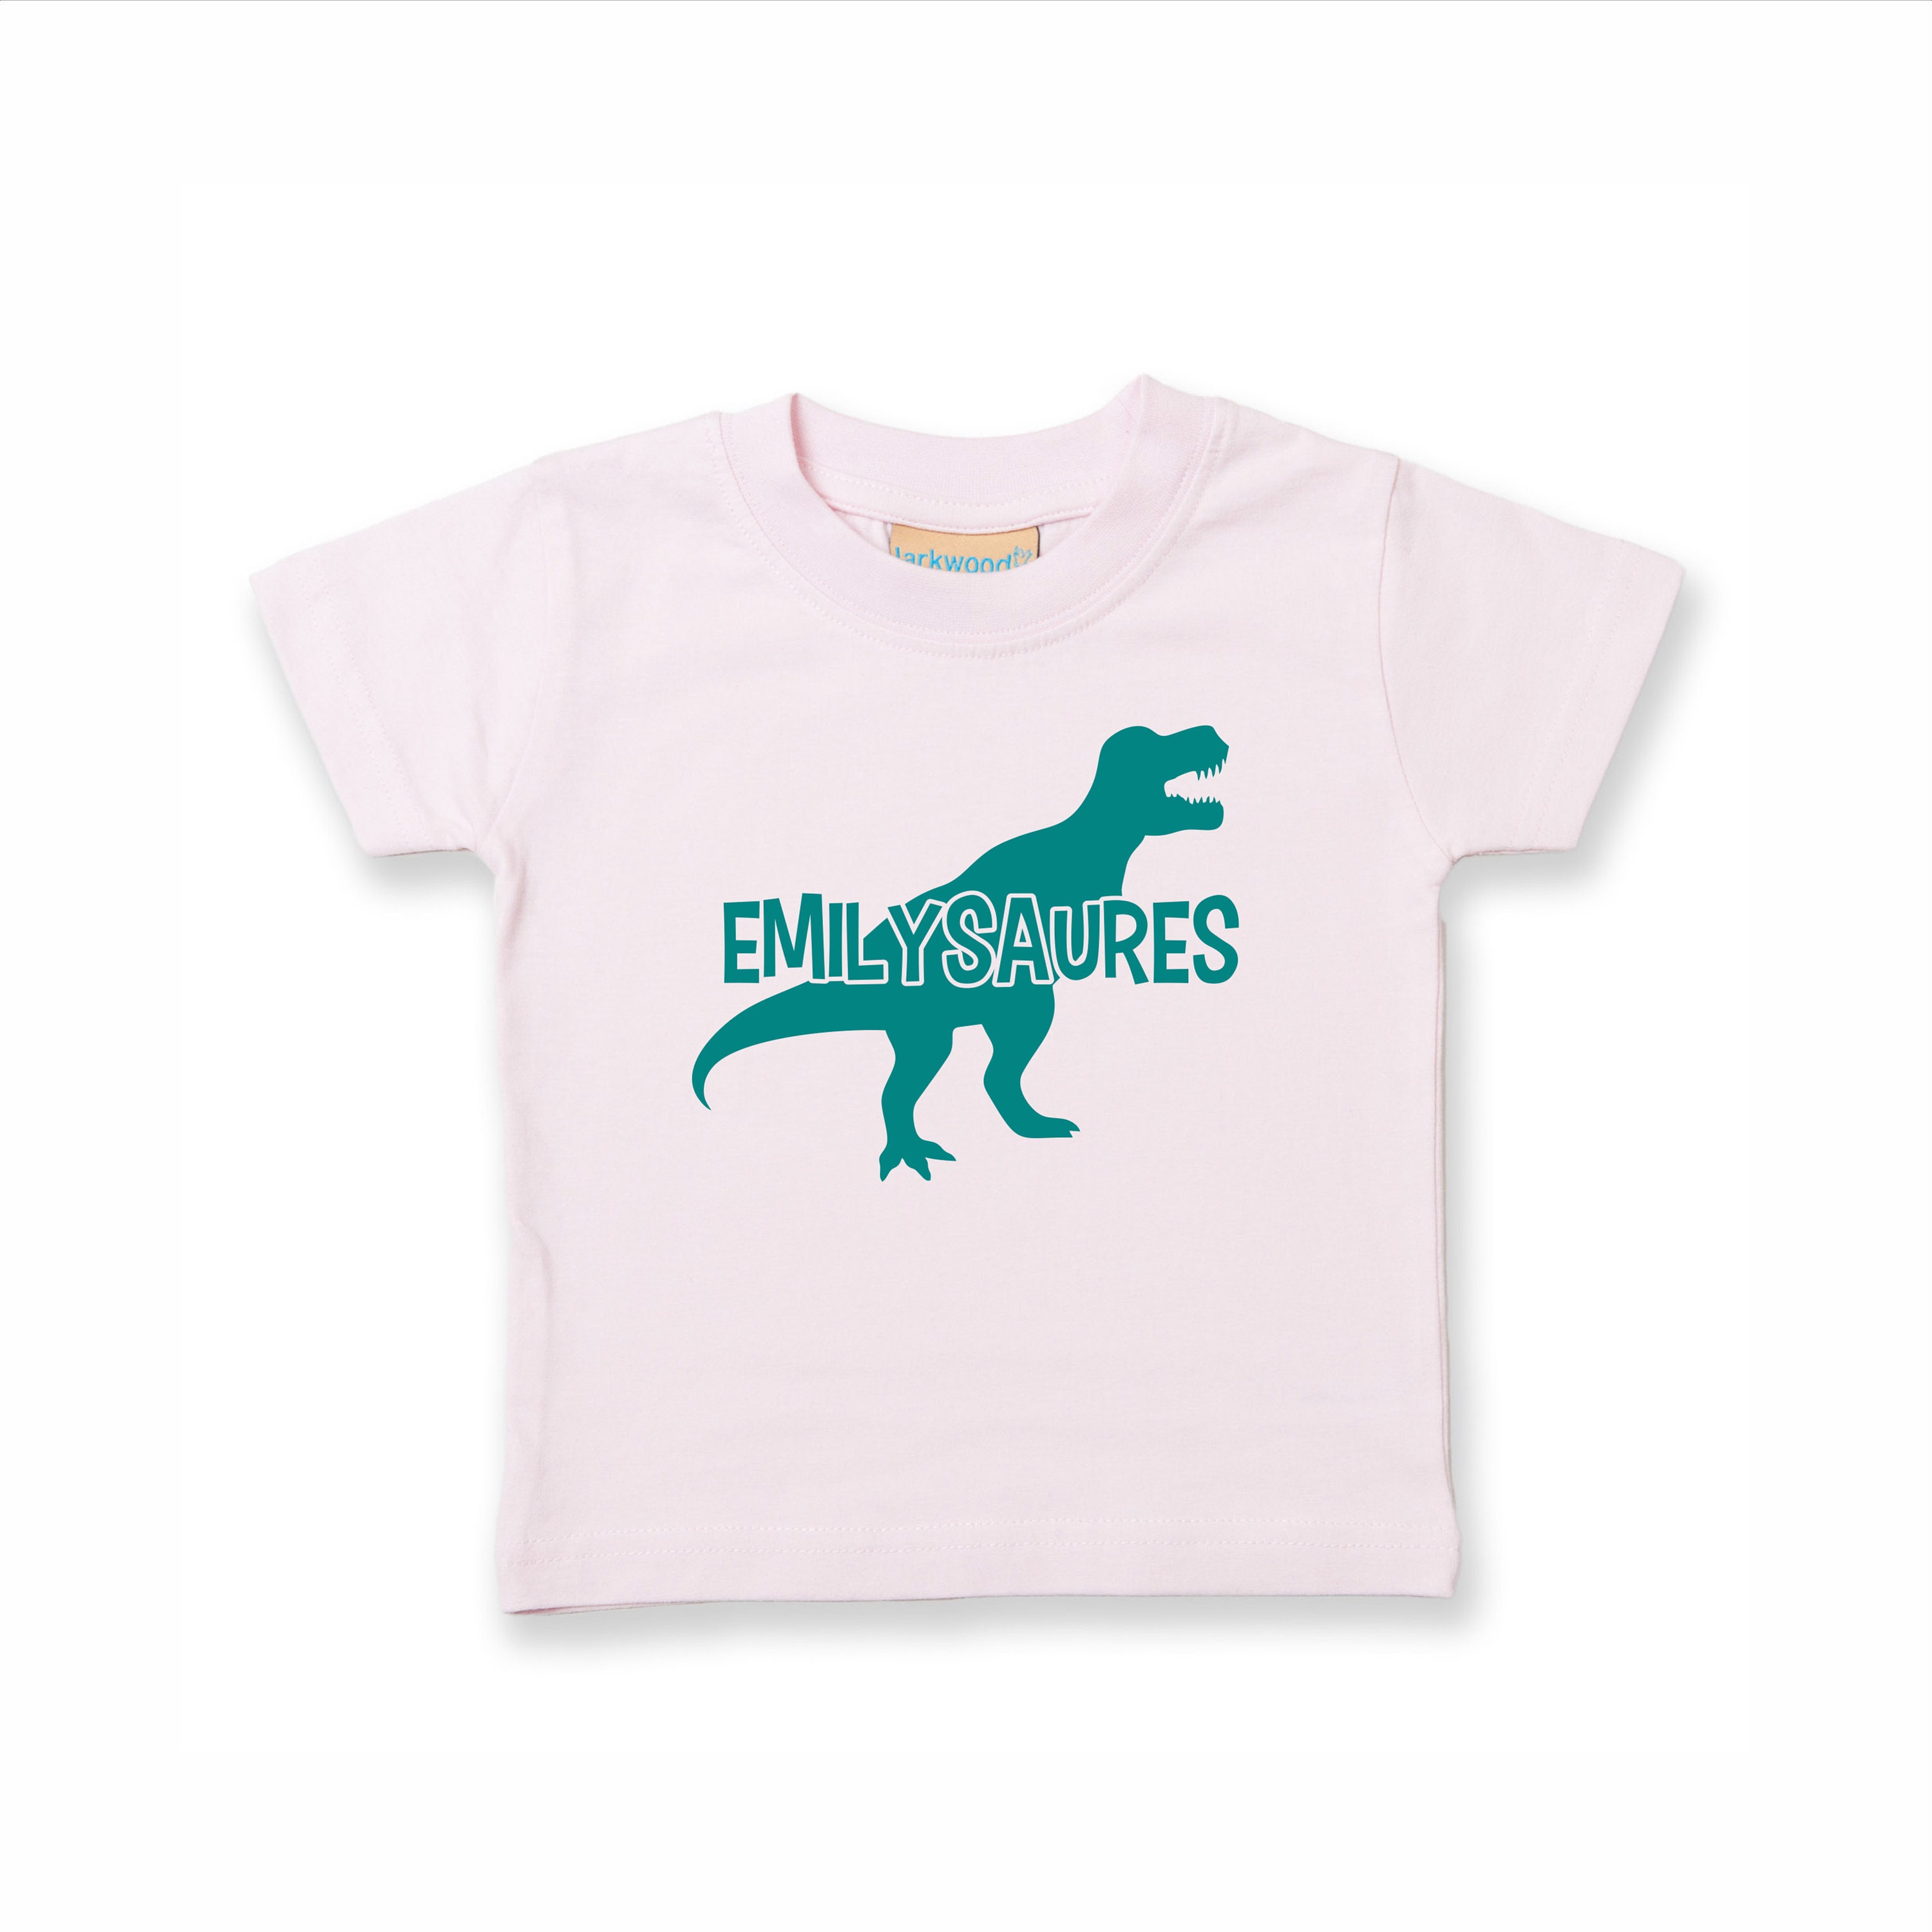 Personalised dinosaur printed tshirt kids/baby tshirt | Etsy